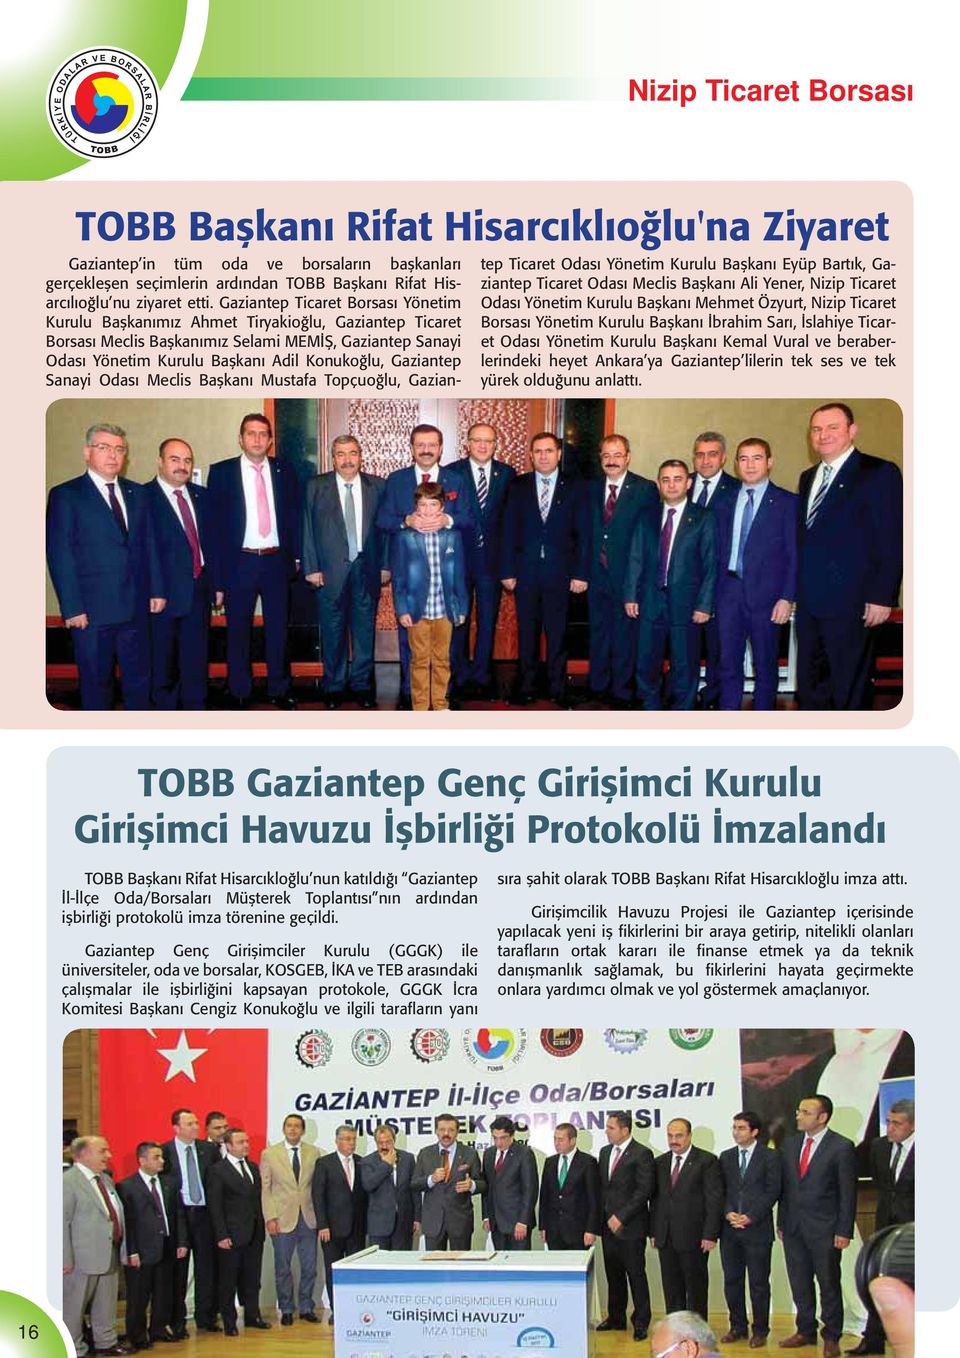 Gaziantep Sanayi Odası Meclis Başkanı Mustafa Topçuoğlu, Gaziantep Ticaret Odası Yönetim Kurulu Başkanı Eyüp Bartık, Gaziantep Ticaret Odası Meclis Başkanı Ali Yener, Nizip Ticaret Odası Yönetim